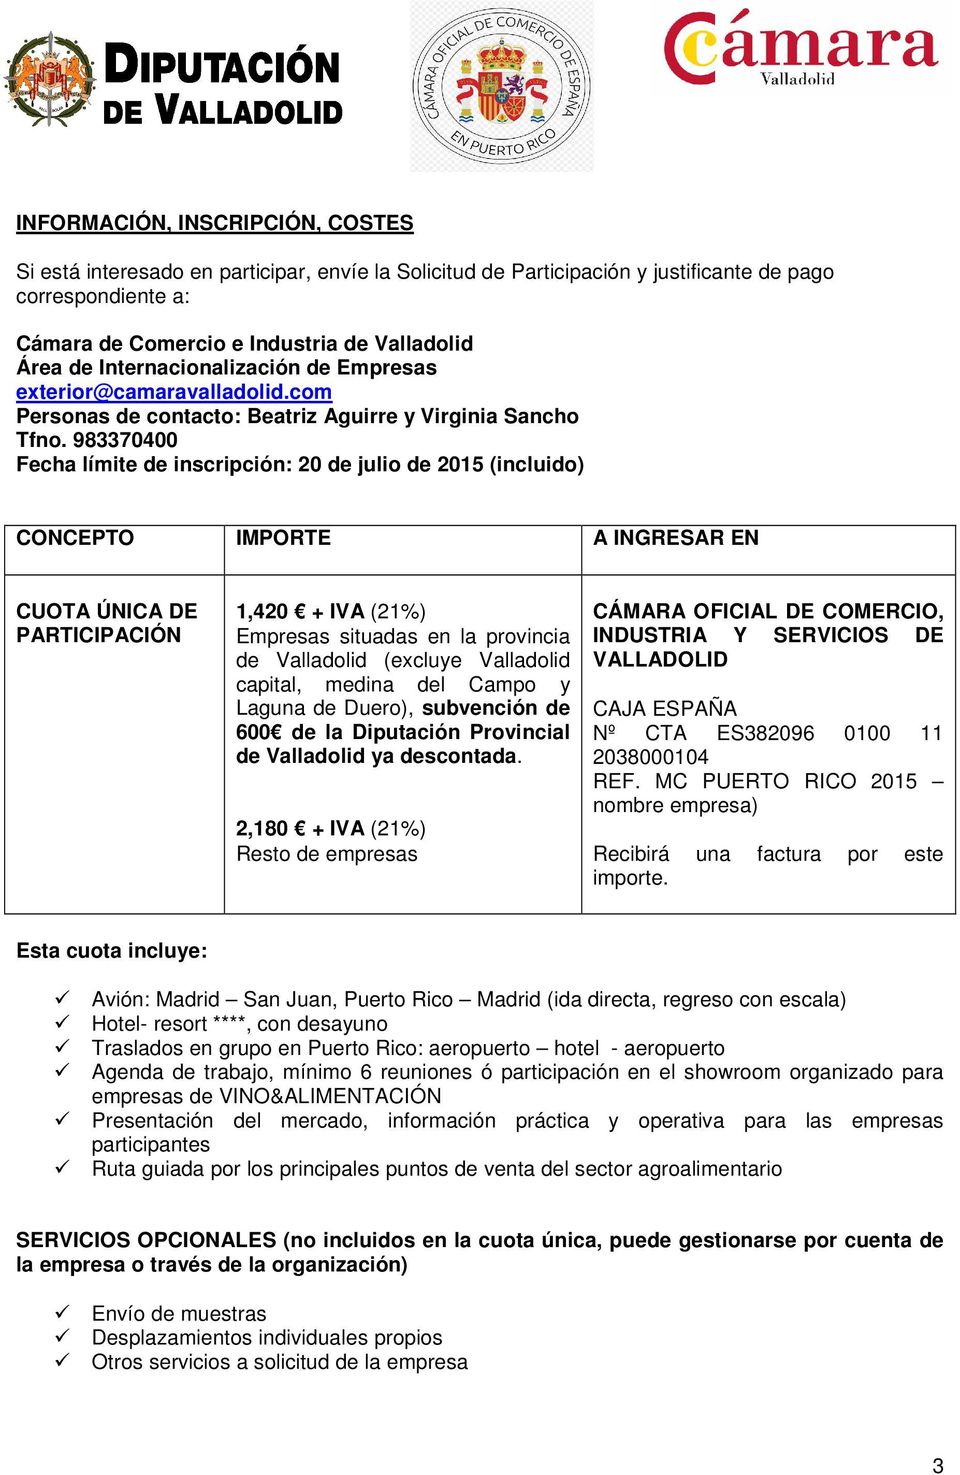 983370400 Fecha límite de inscripción: 20 de julio de 2015 (incluido) CONCEPTO IMPORTE A INGRESAR EN CUOTA ÚNICA DE PARTICIPACIÓN 1,420 + IVA (21%) Empresas situadas en la provincia de Valladolid